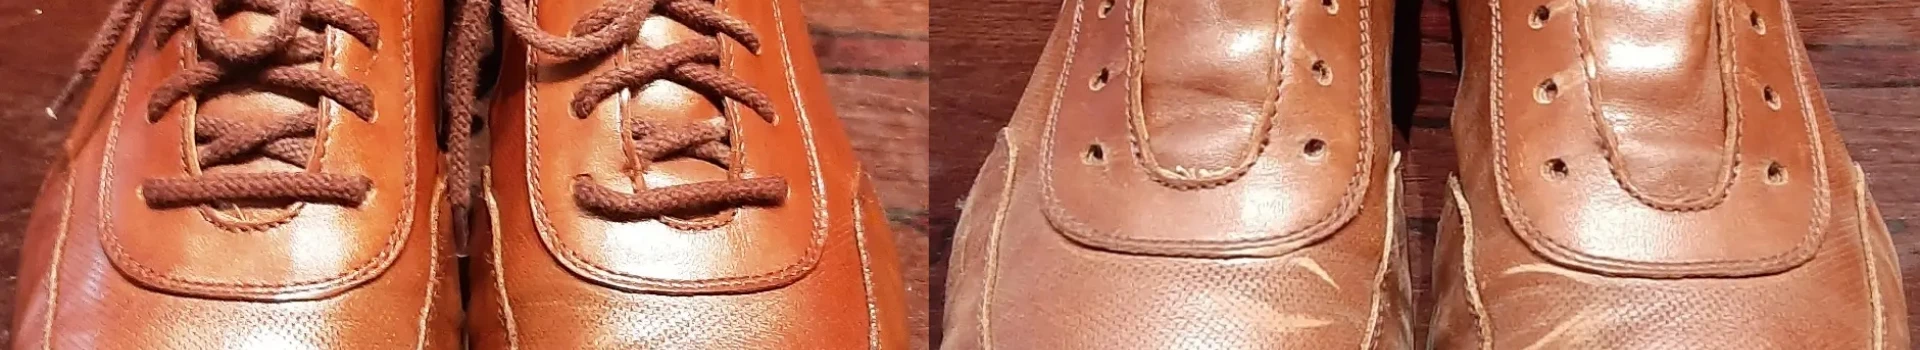 buty przed i po regeneracji